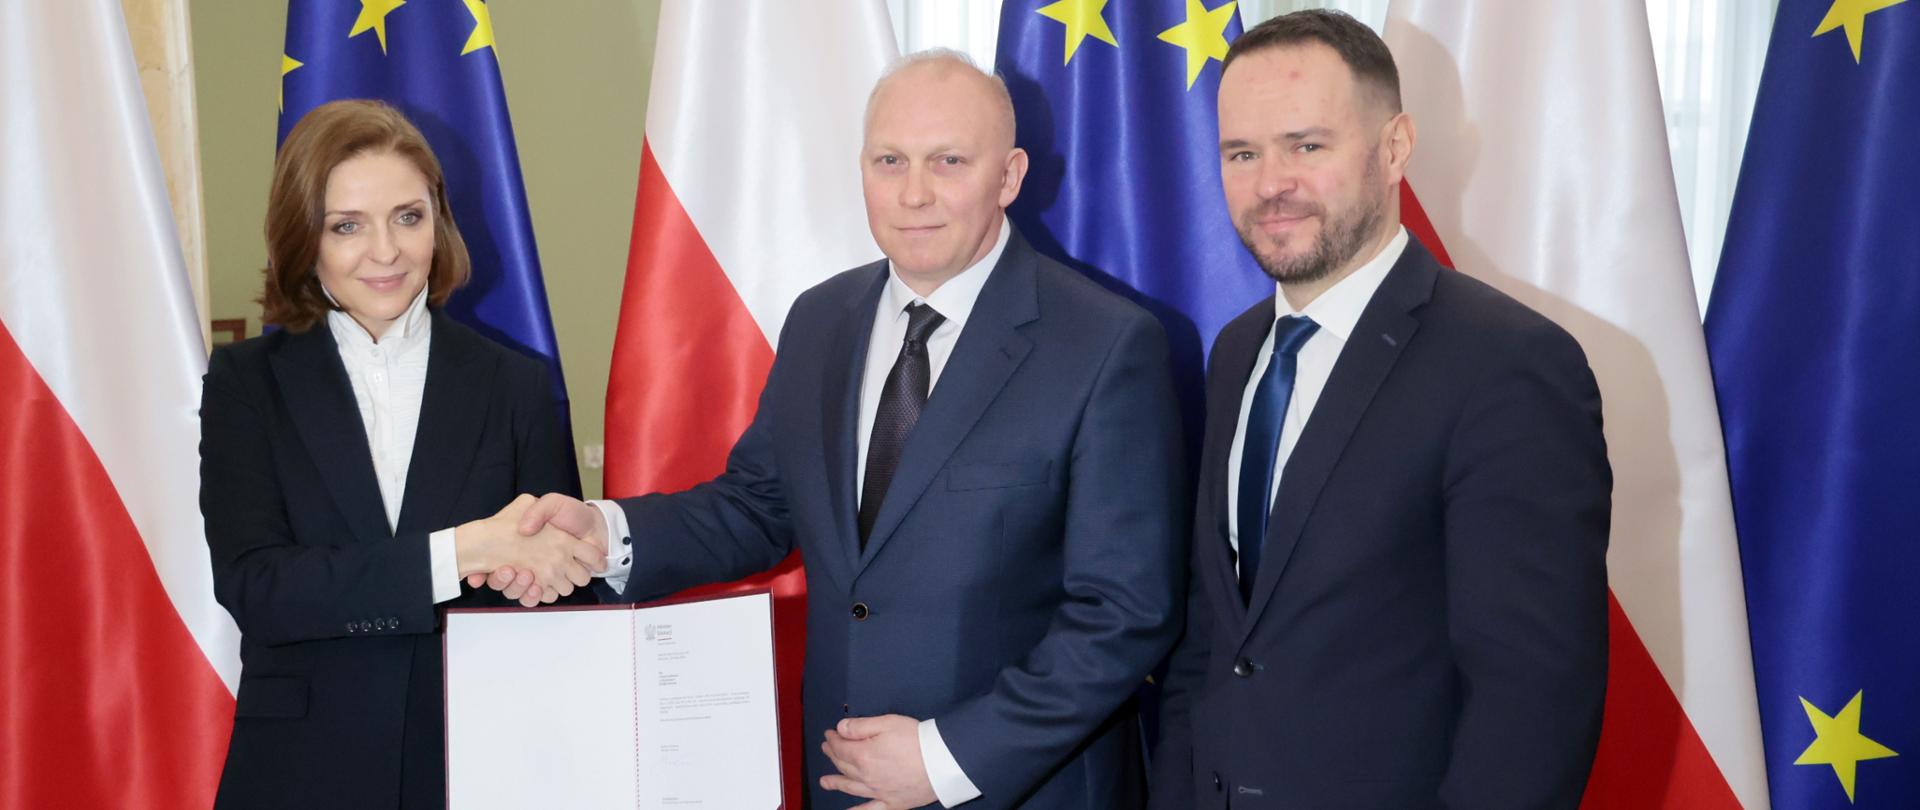 Kobieta podaje rękę mężczyźnie w garniturze jednocześnie trzymając w drugim ręku otwarty dokument. Obok nich stoi mężczyzna w garniturze, w tle flagi Polski i Unii Europejskiej. 